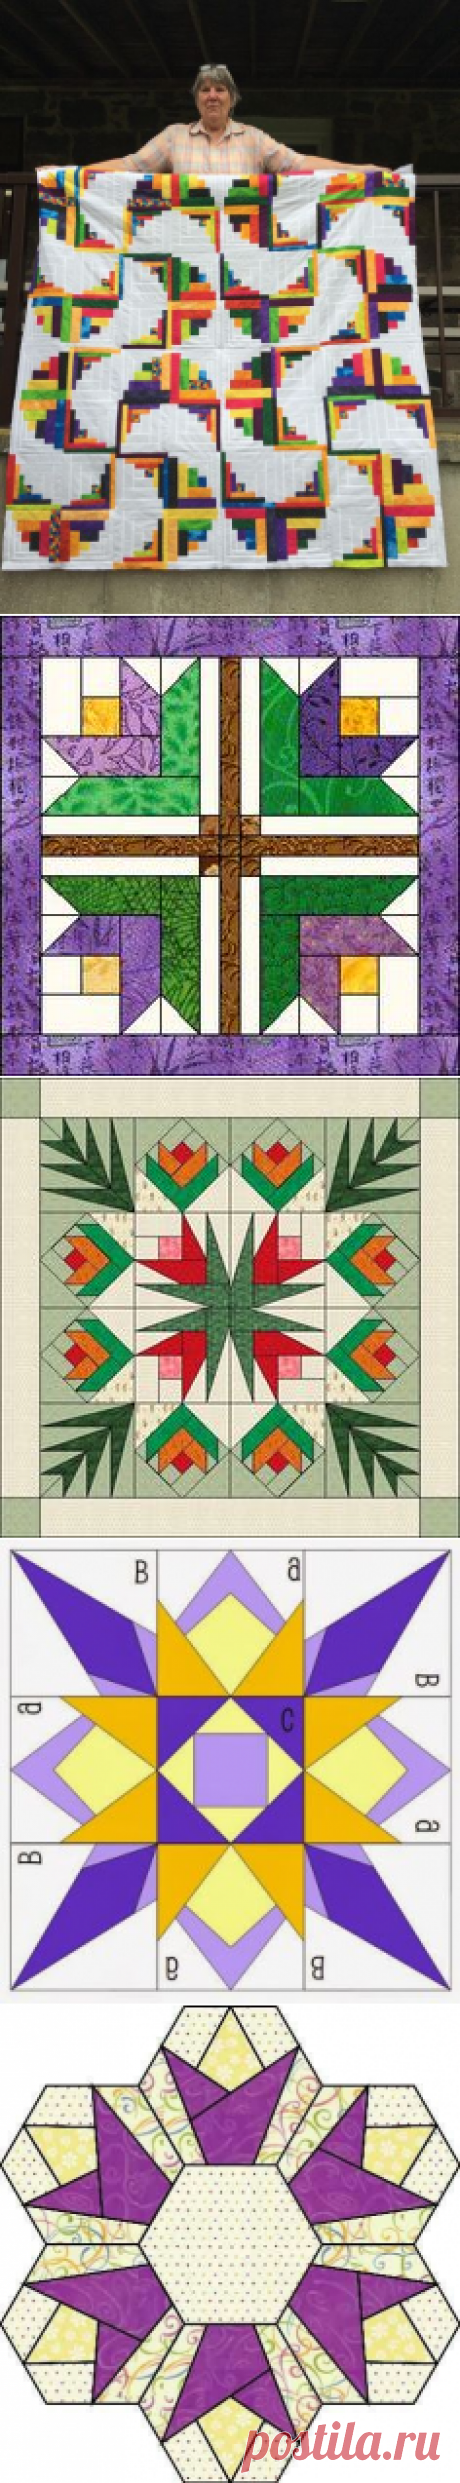 Образцы лоскутных блоков с использованием квадратов и треугольников, ромбов и шестиугольников — Сделай сам, идеи для творчества - DIY Ideas